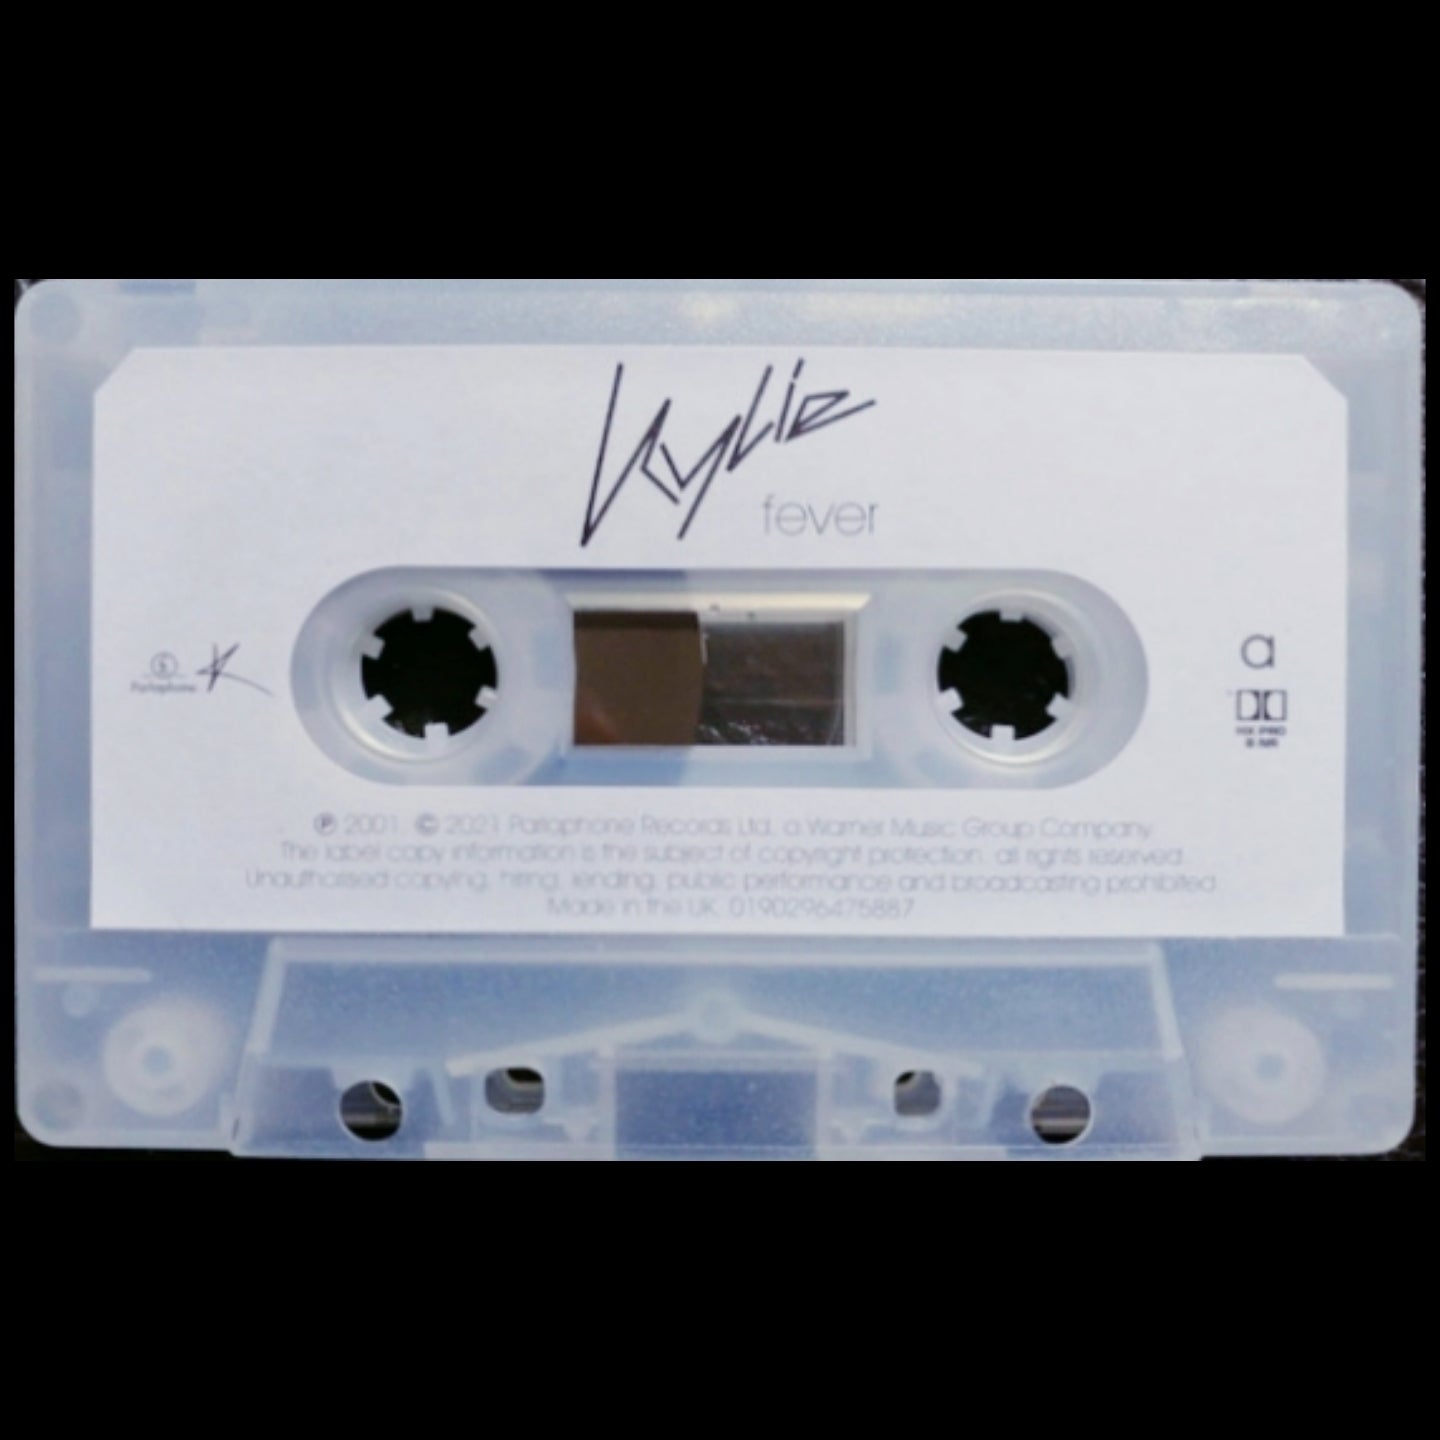 Kylie: Fever - Cassette givrée du 20e anniversaire